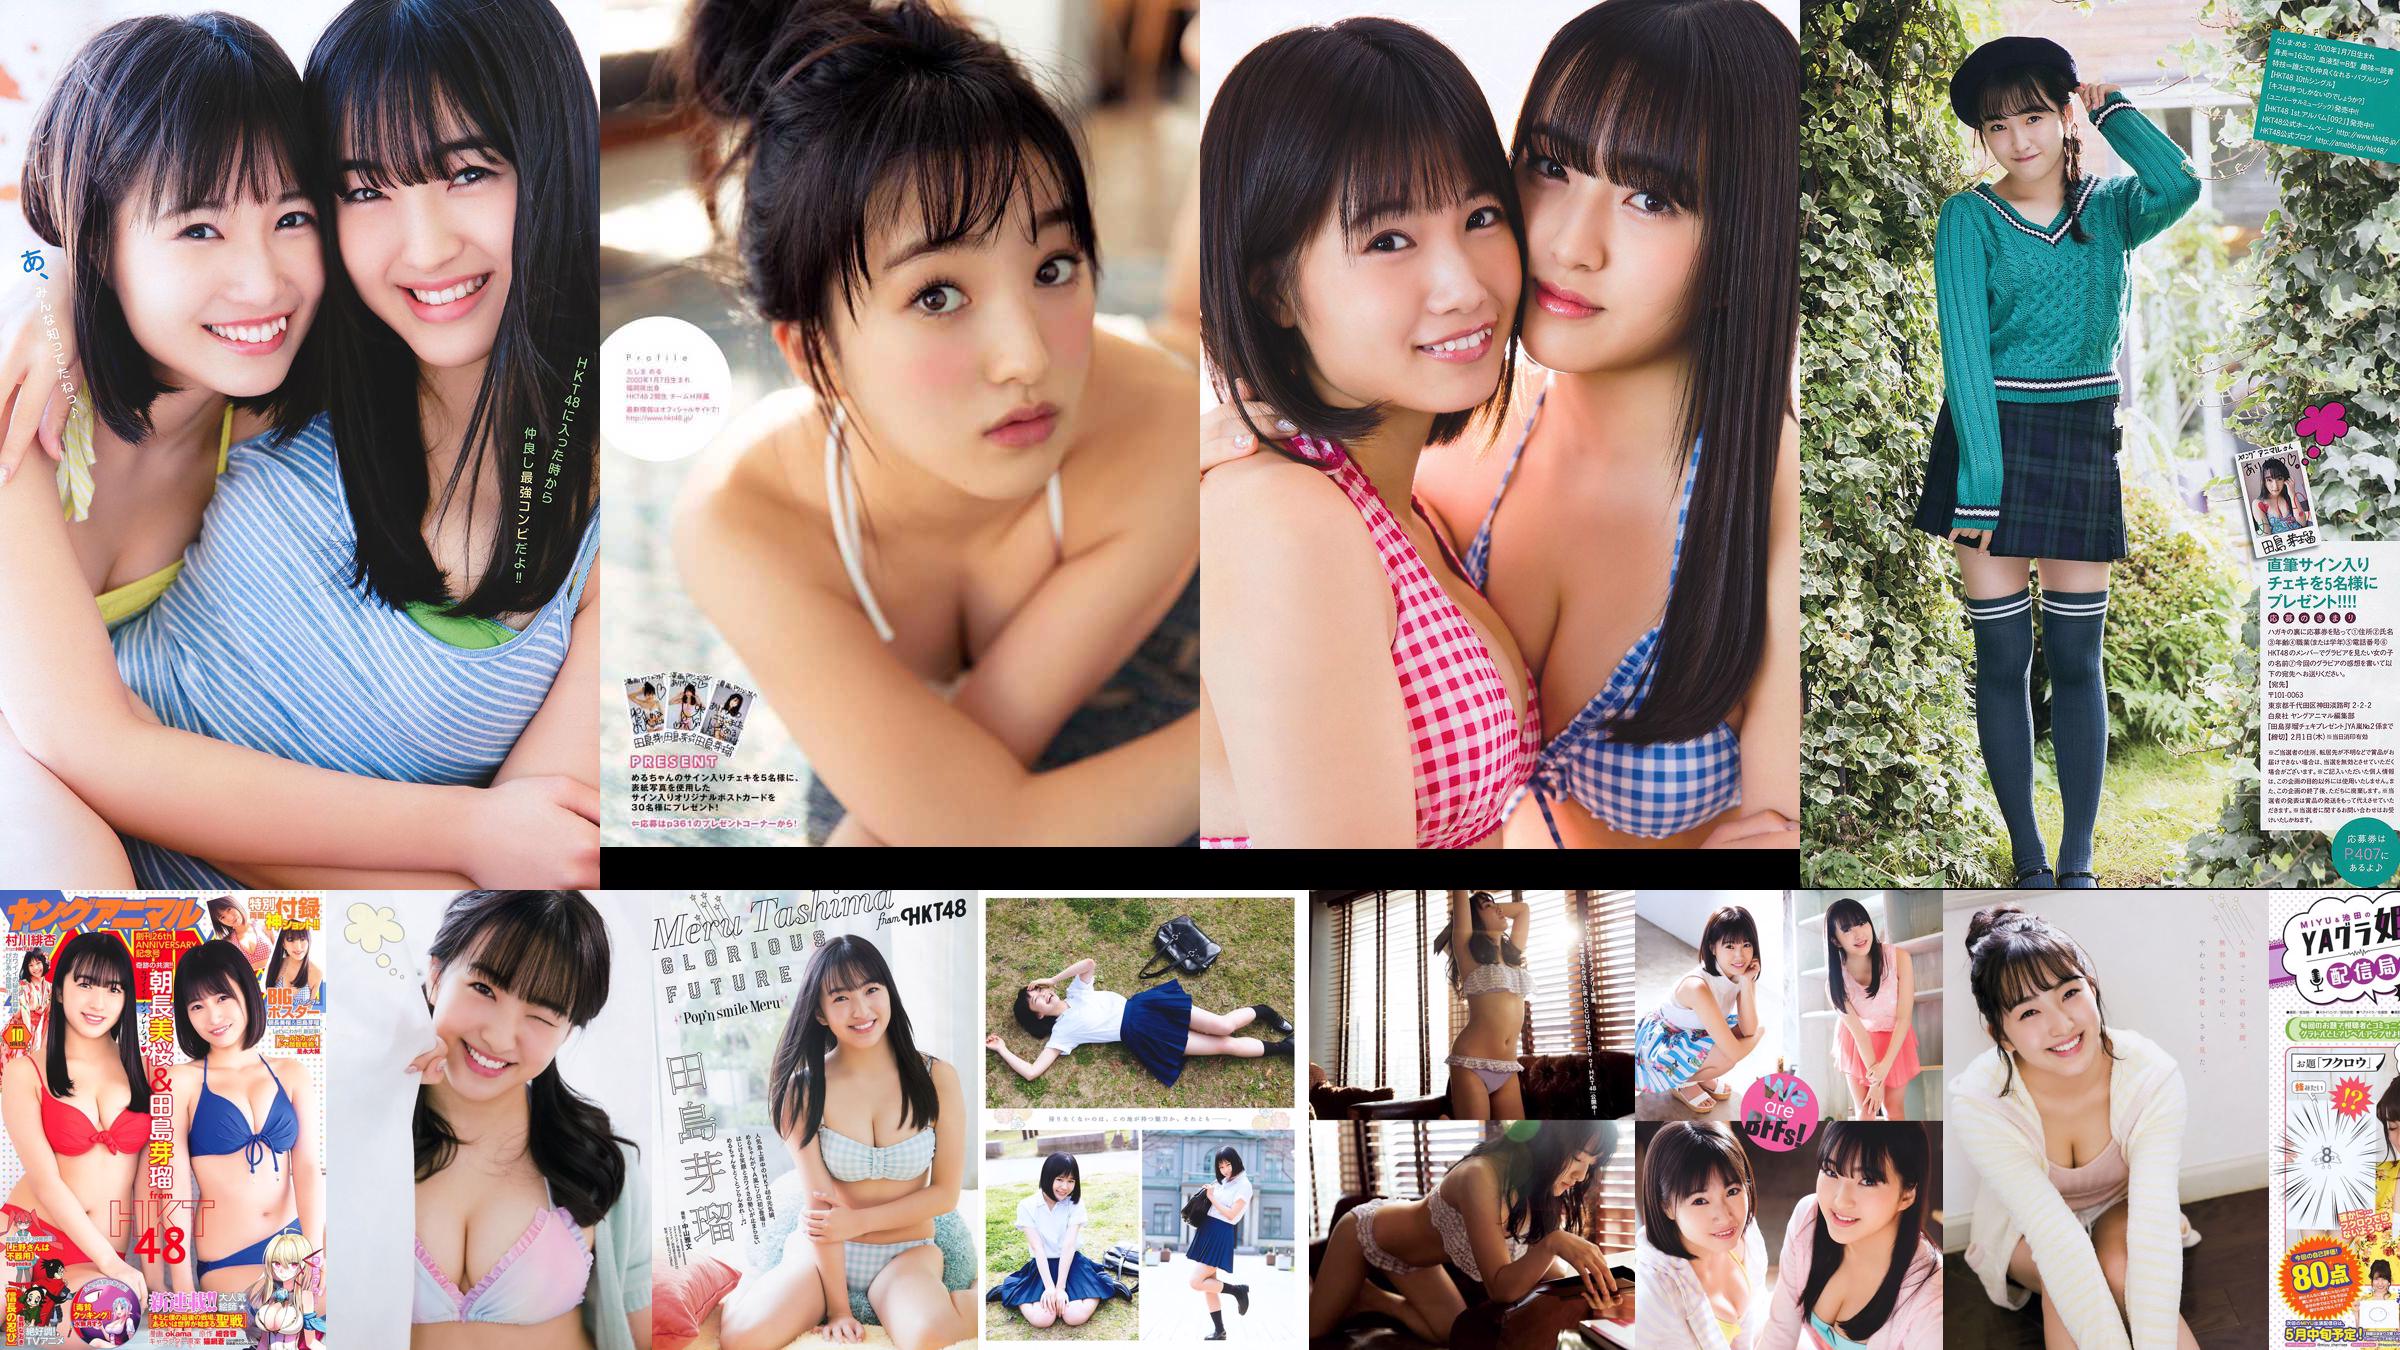 Nana Ayano Yuka Someya [Young Animal Arashi Special Edition] No.06 2015 Foto No.aa05ec Seite 5